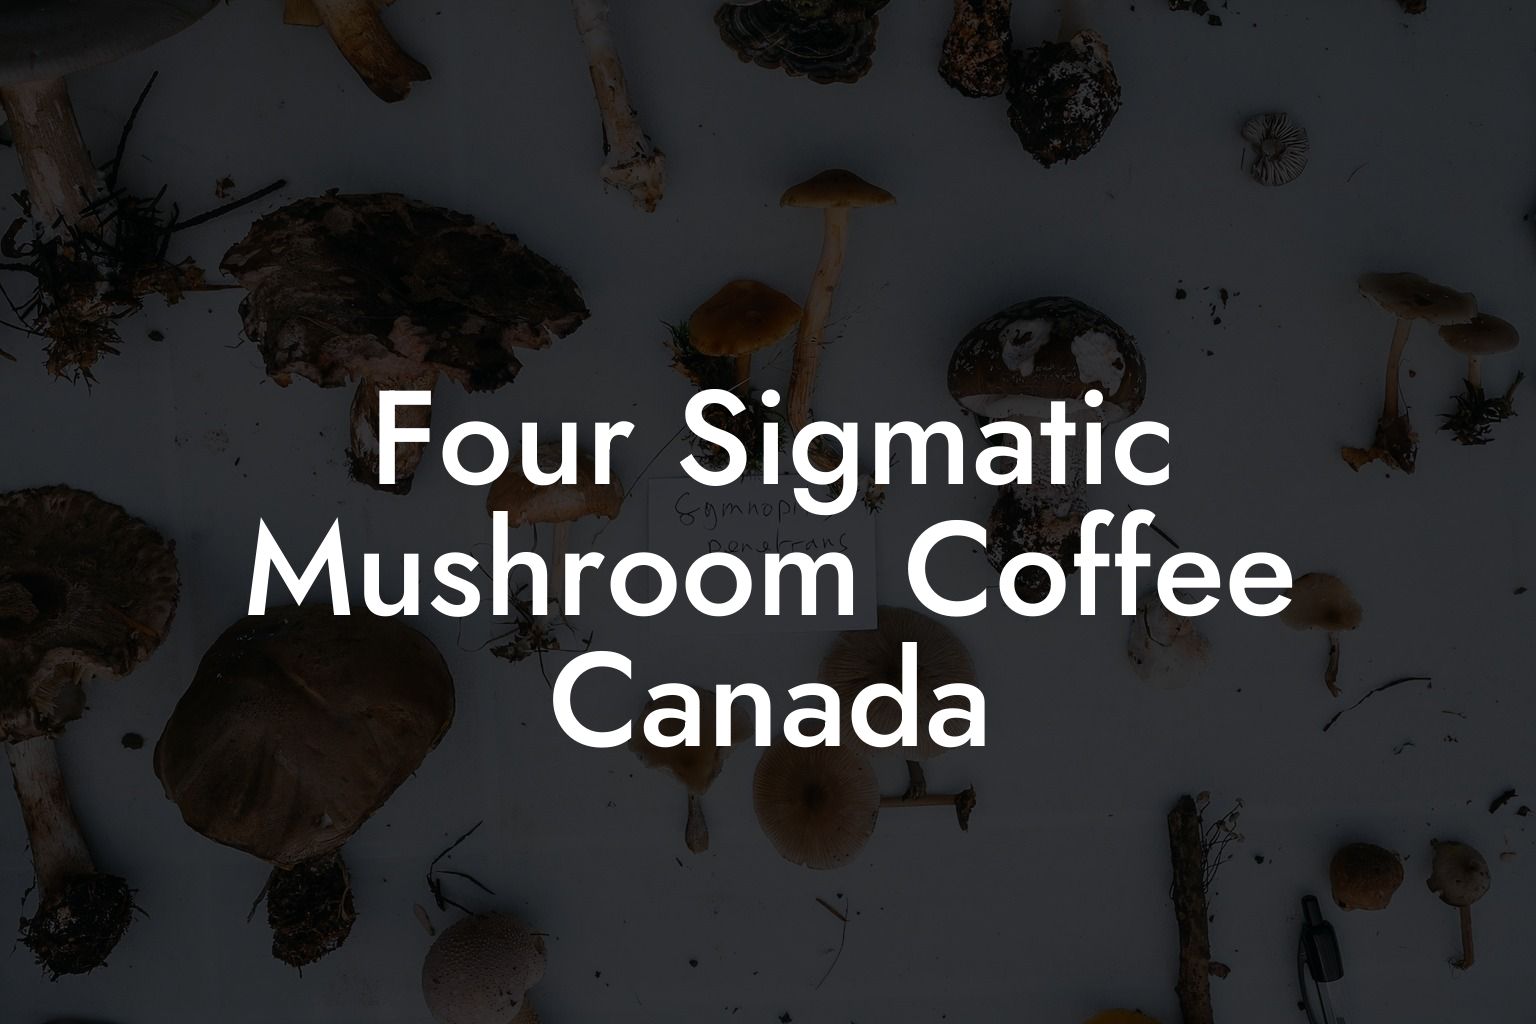 Four Sigmatic Mushroom Coffee Canada